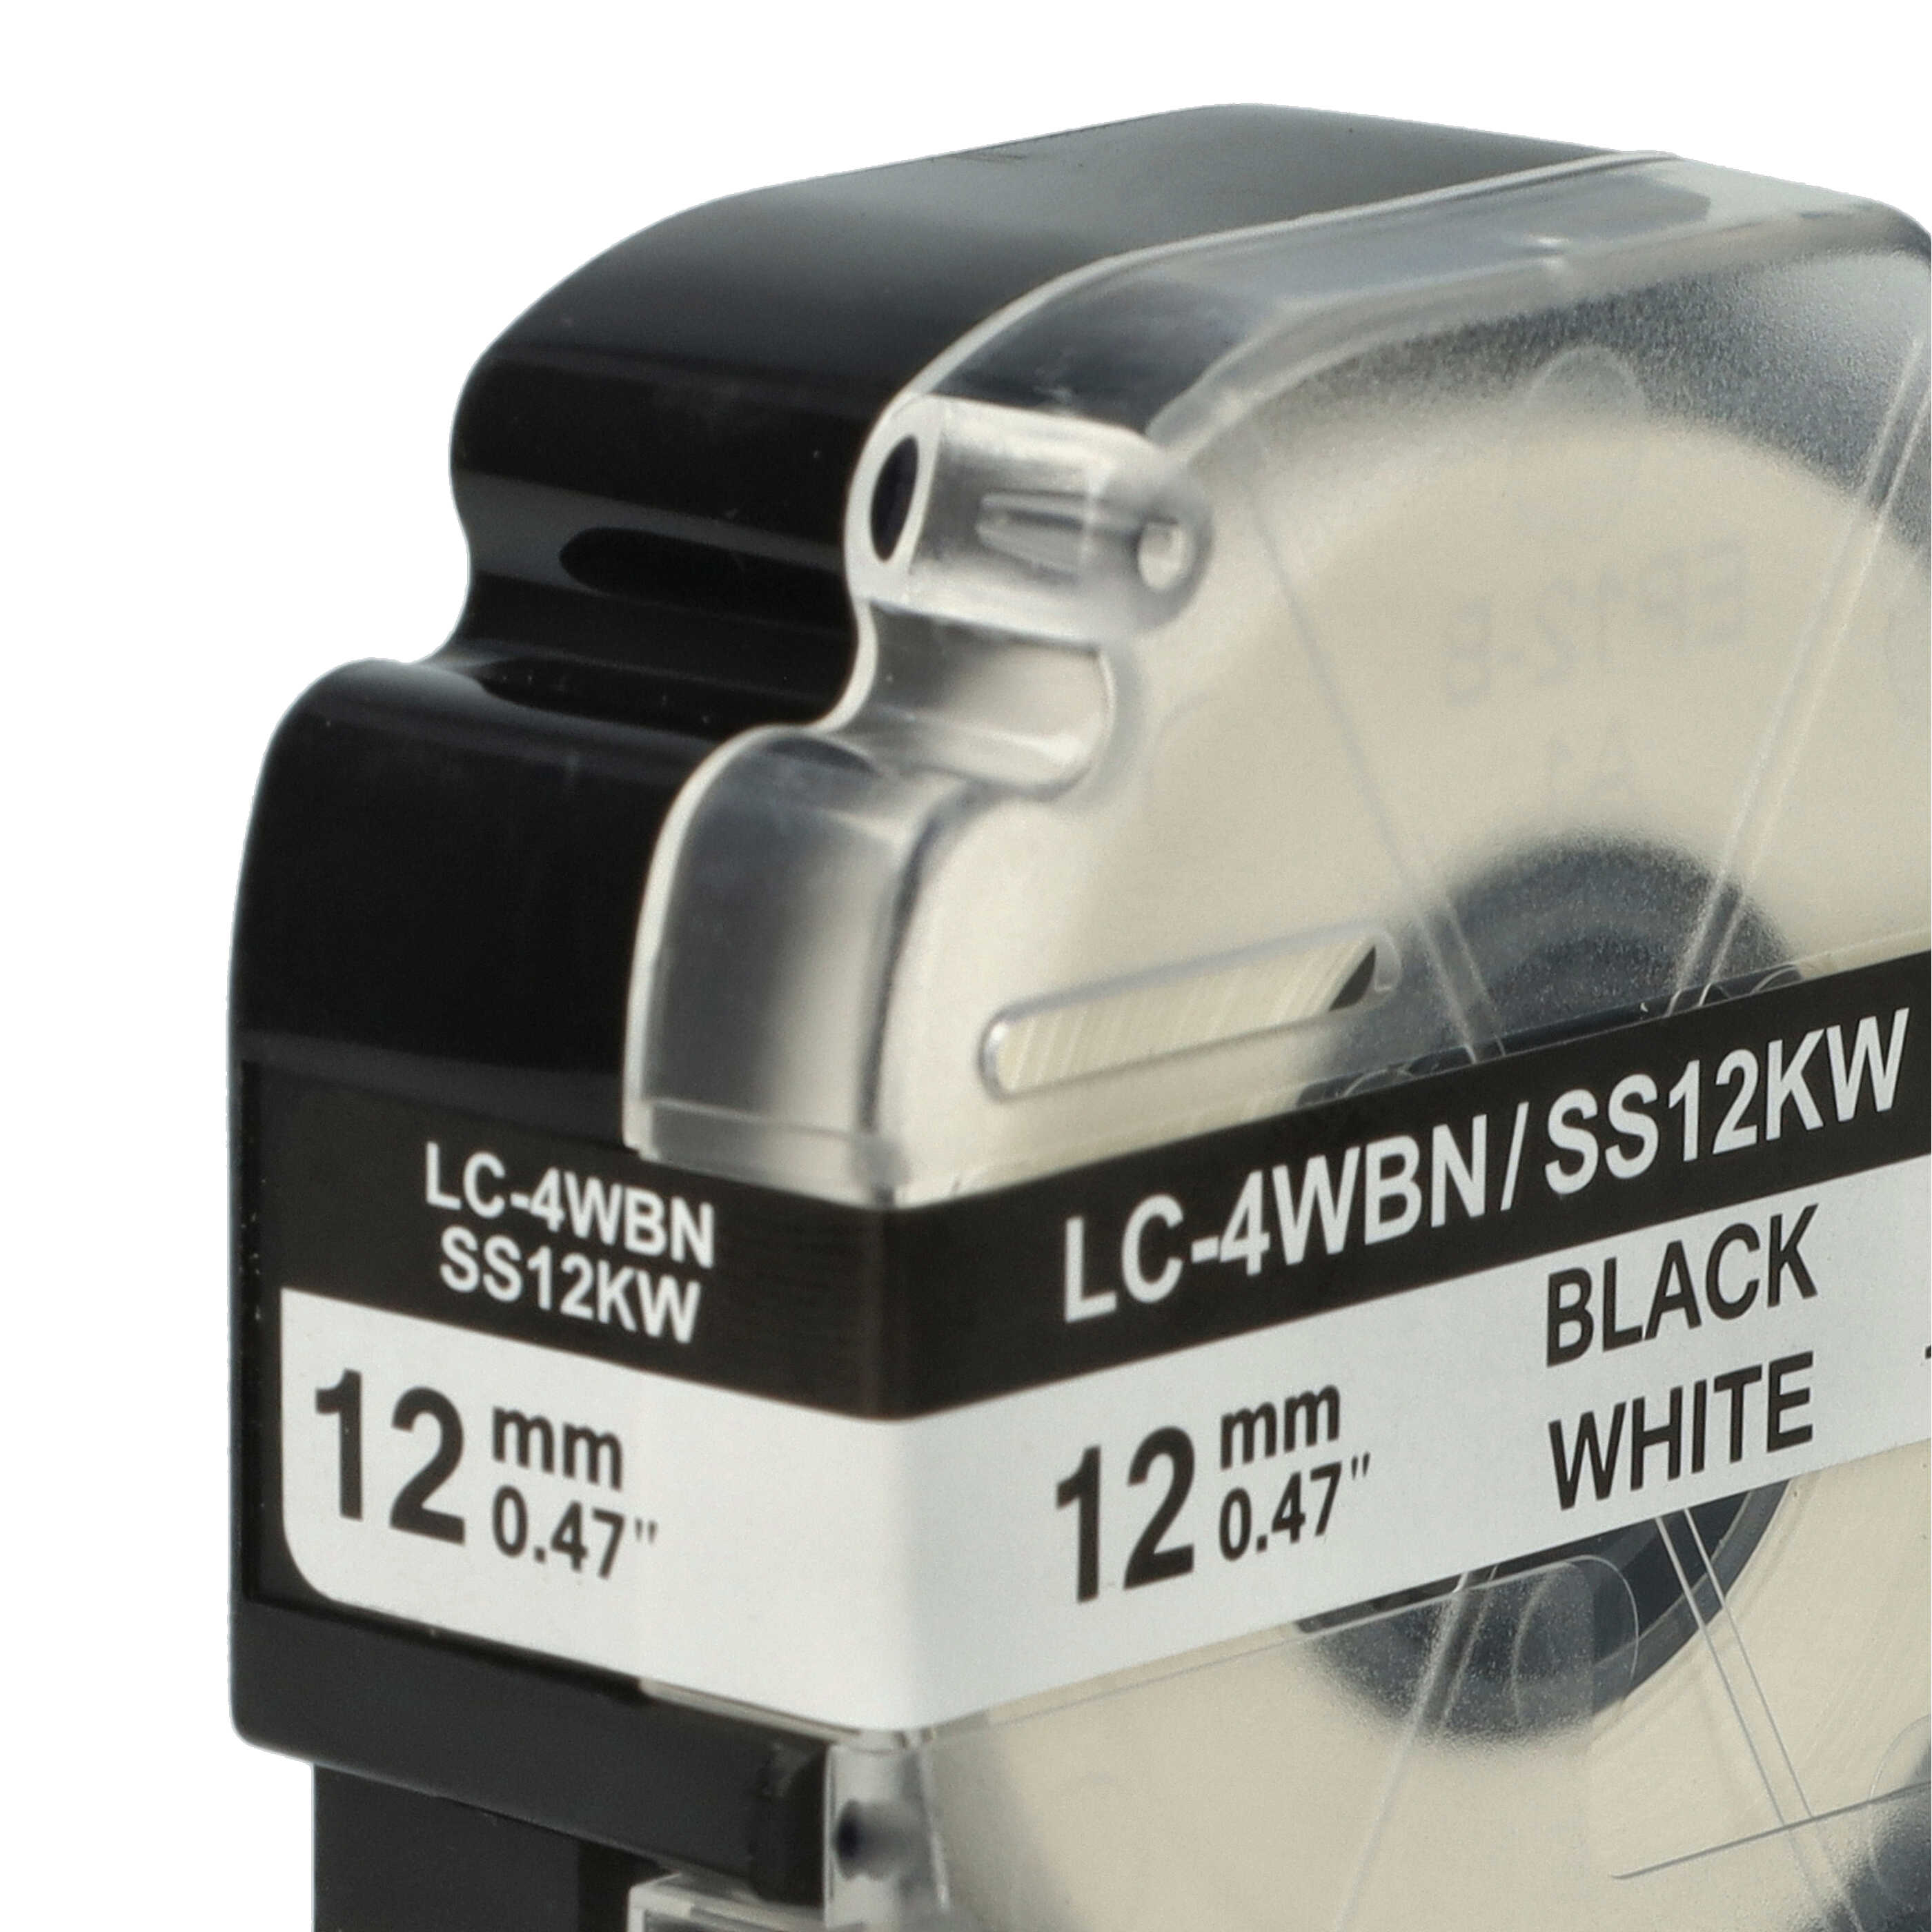 2x Cassettes à ruban remplacent Epson SS12KW, LC-4WBN - 12mm lettrage Noir ruban Blanc